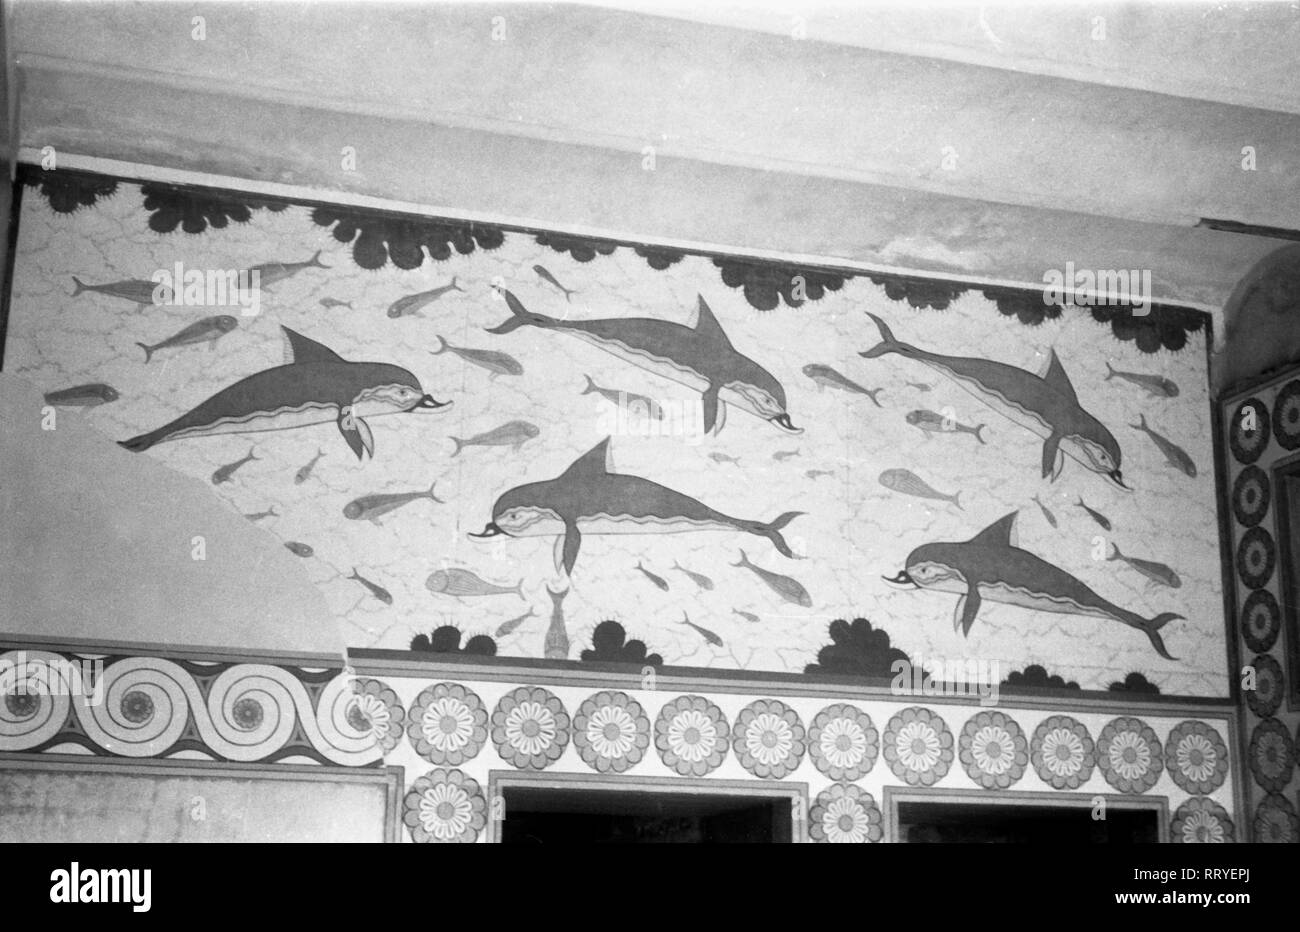 France, Grèce - Delphinfries aus dem Palast von Knossos auf Kreta, Griechenland, 1950er Jahre. À la frise dauphin palais de Knossos en Crète, Grèce, 1950. Banque D'Images